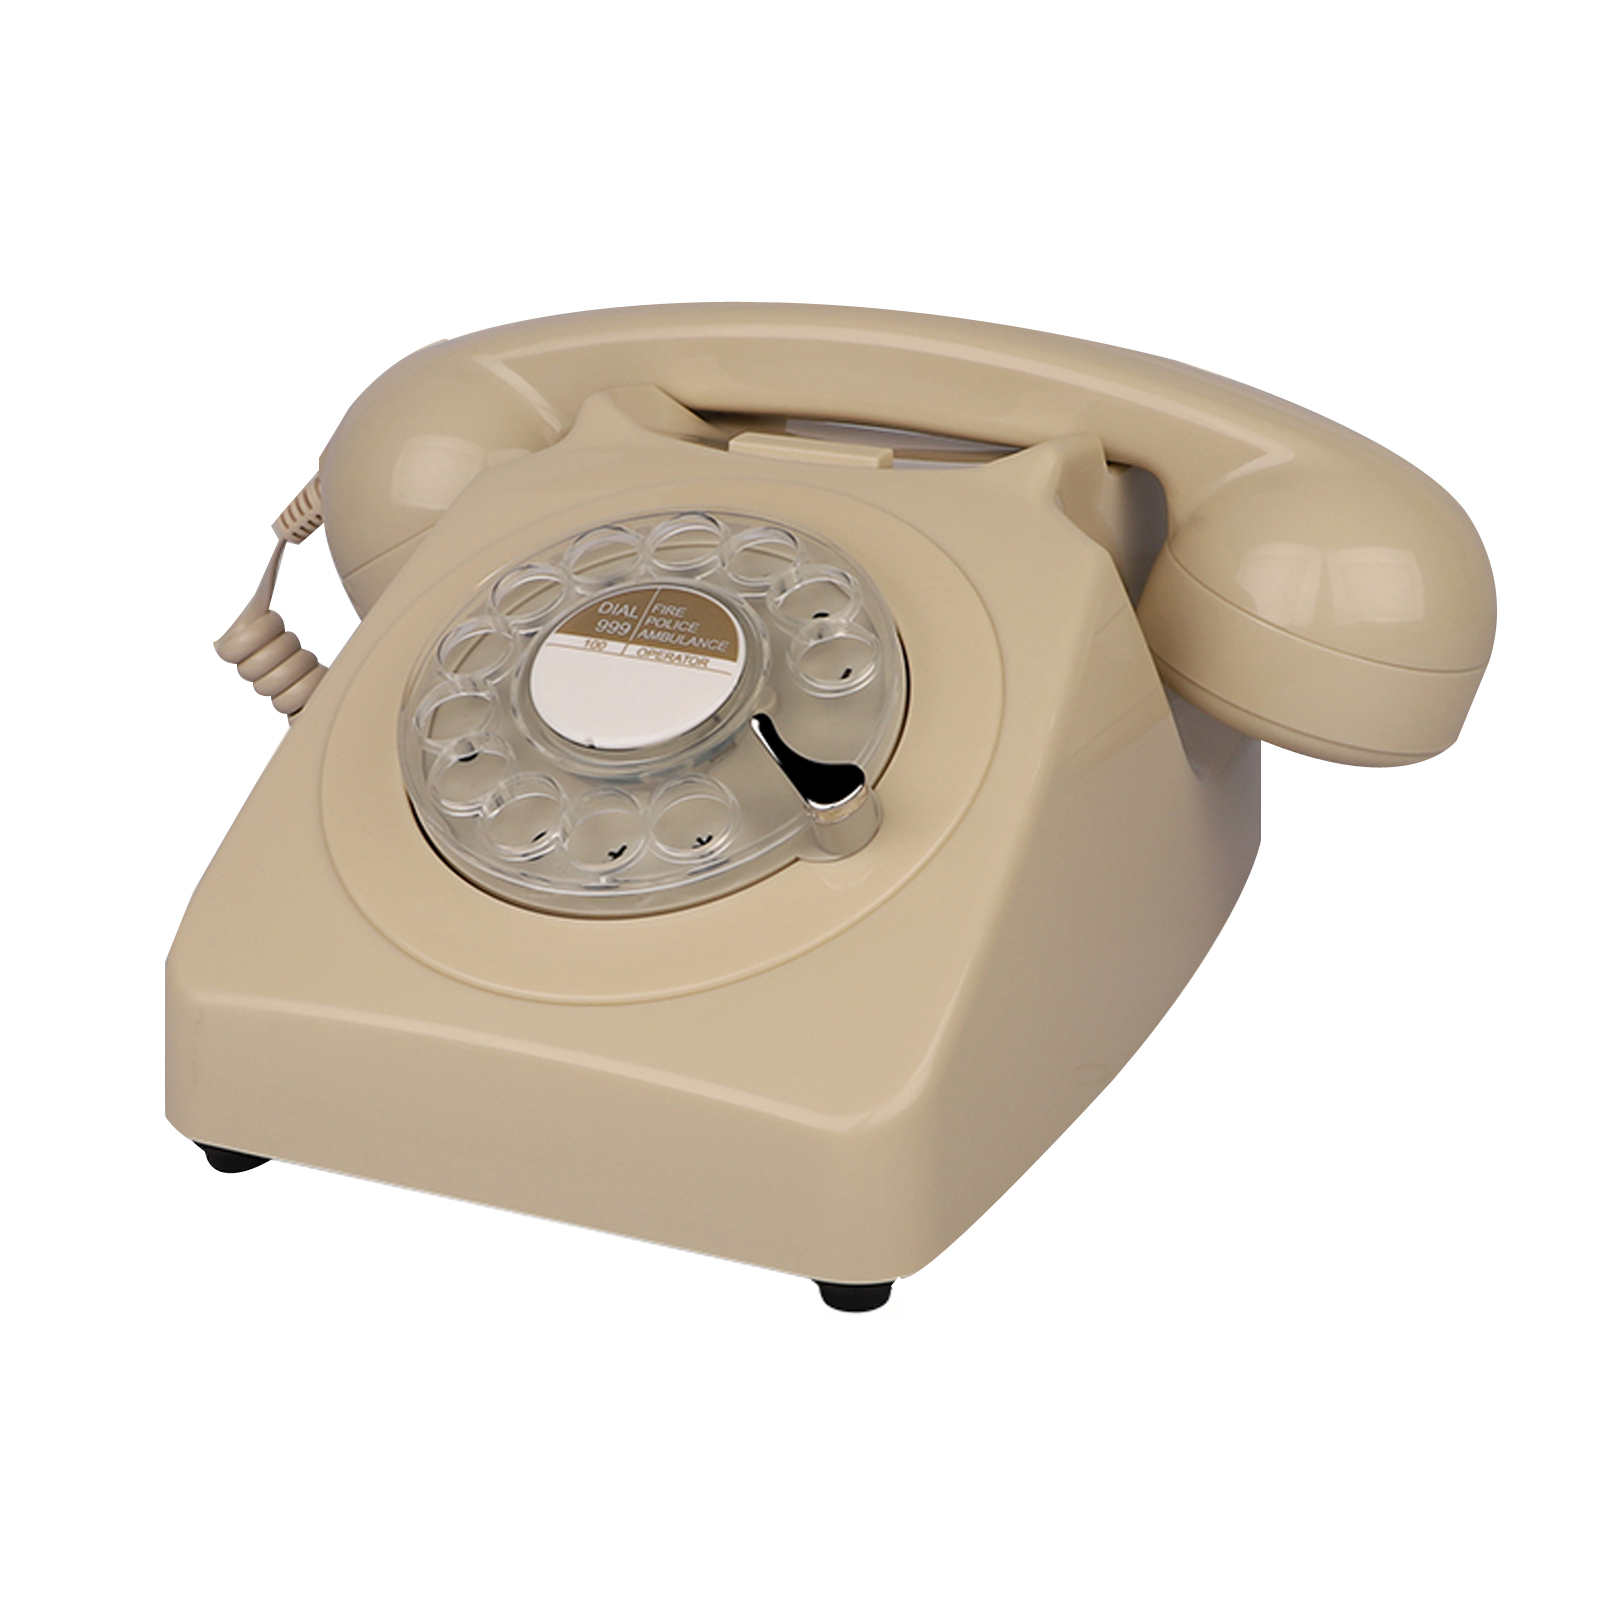 ASHATA Téléphone Filaire dans Un Design rétro, téléphone Fixe  Vintage/téléphone Design rétro/téléphone Fixe Filaire/Vieux téléphone  Cadranr Rotatif